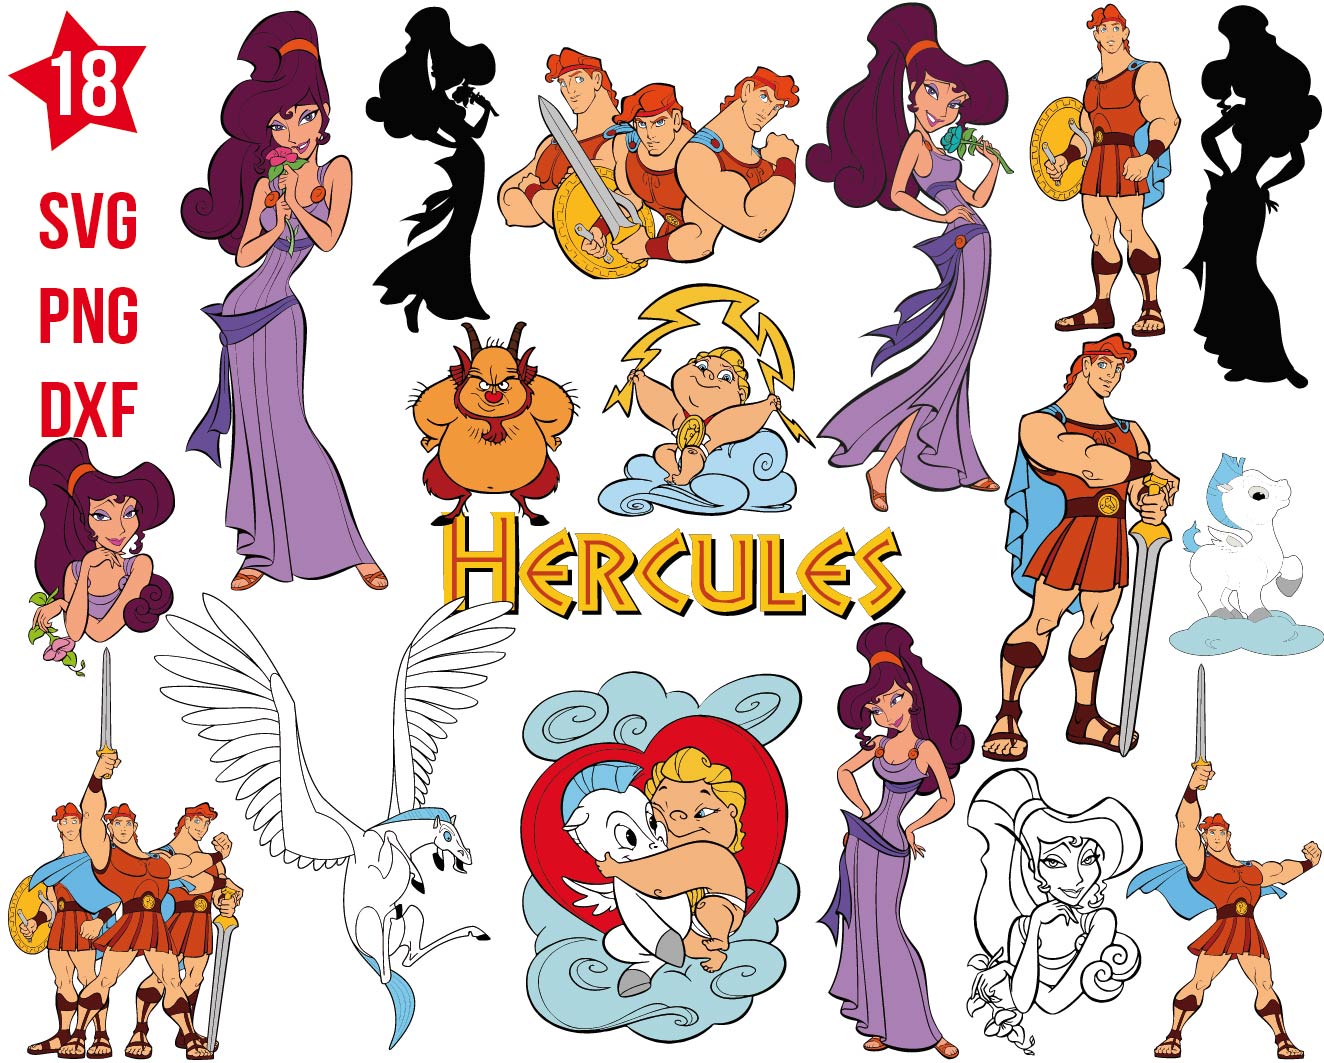 Hercules svg, Hercules png, Hercules dxf, Hercules cricut, Hercules cut